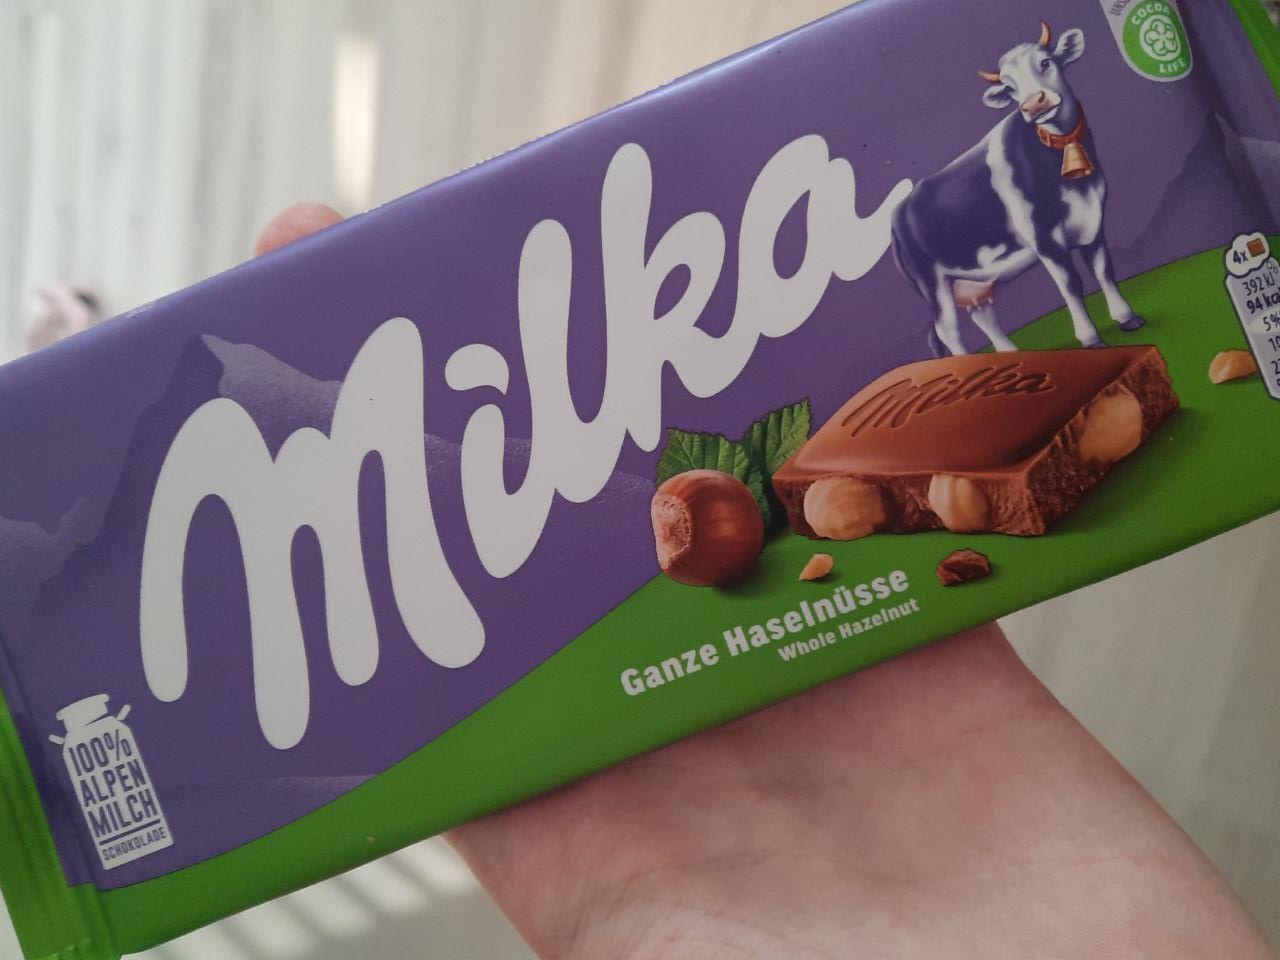 Фото - Шоколад молочный с цельным фундуком Milka